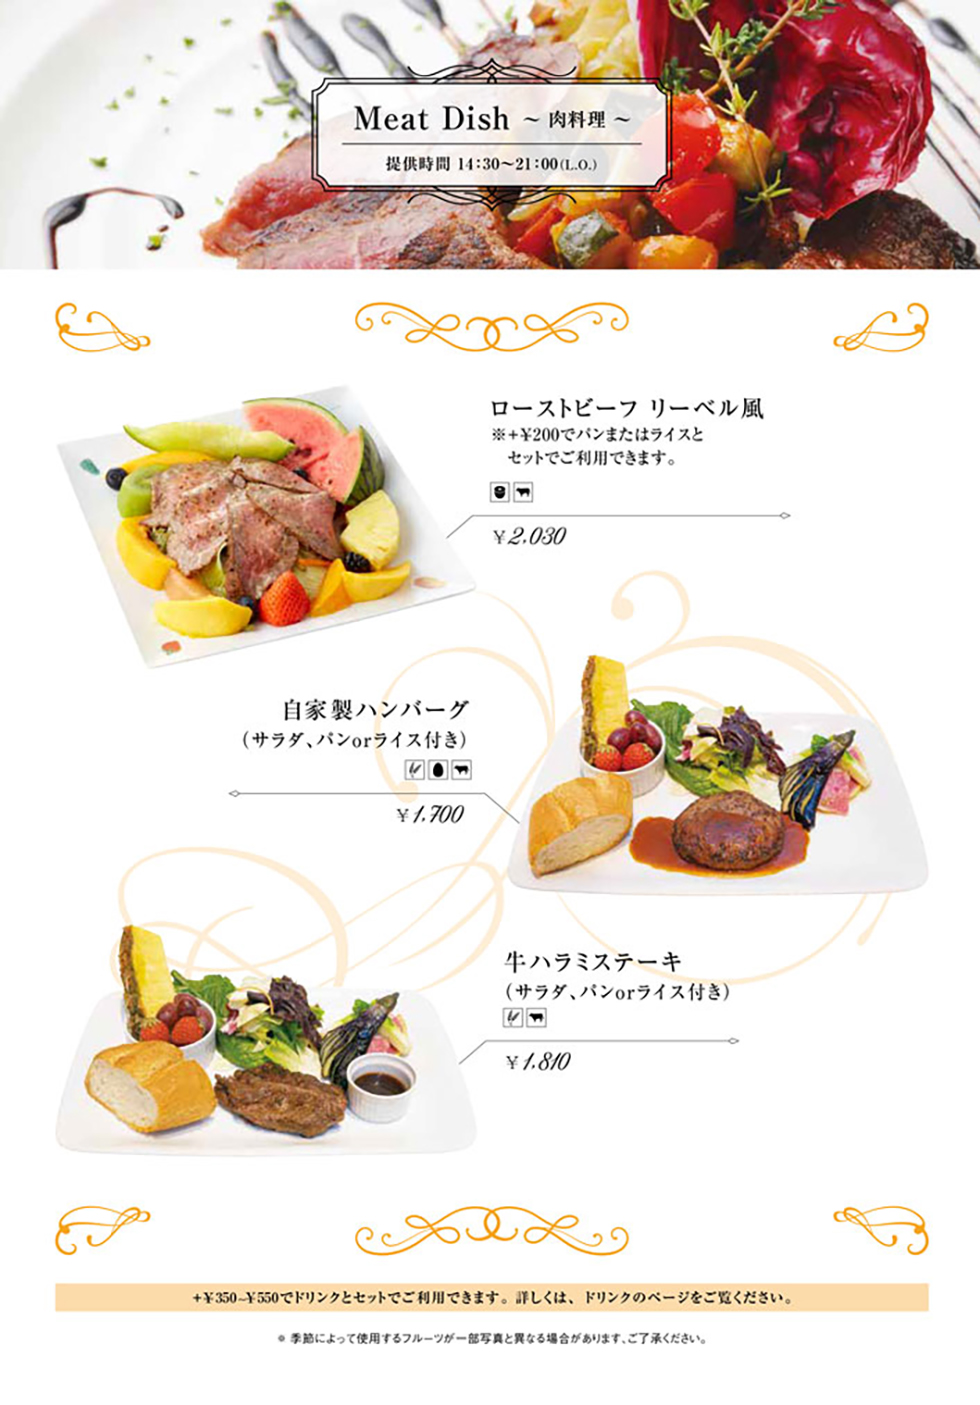 リーベルecute立川店の食事メニュー定番肉料理